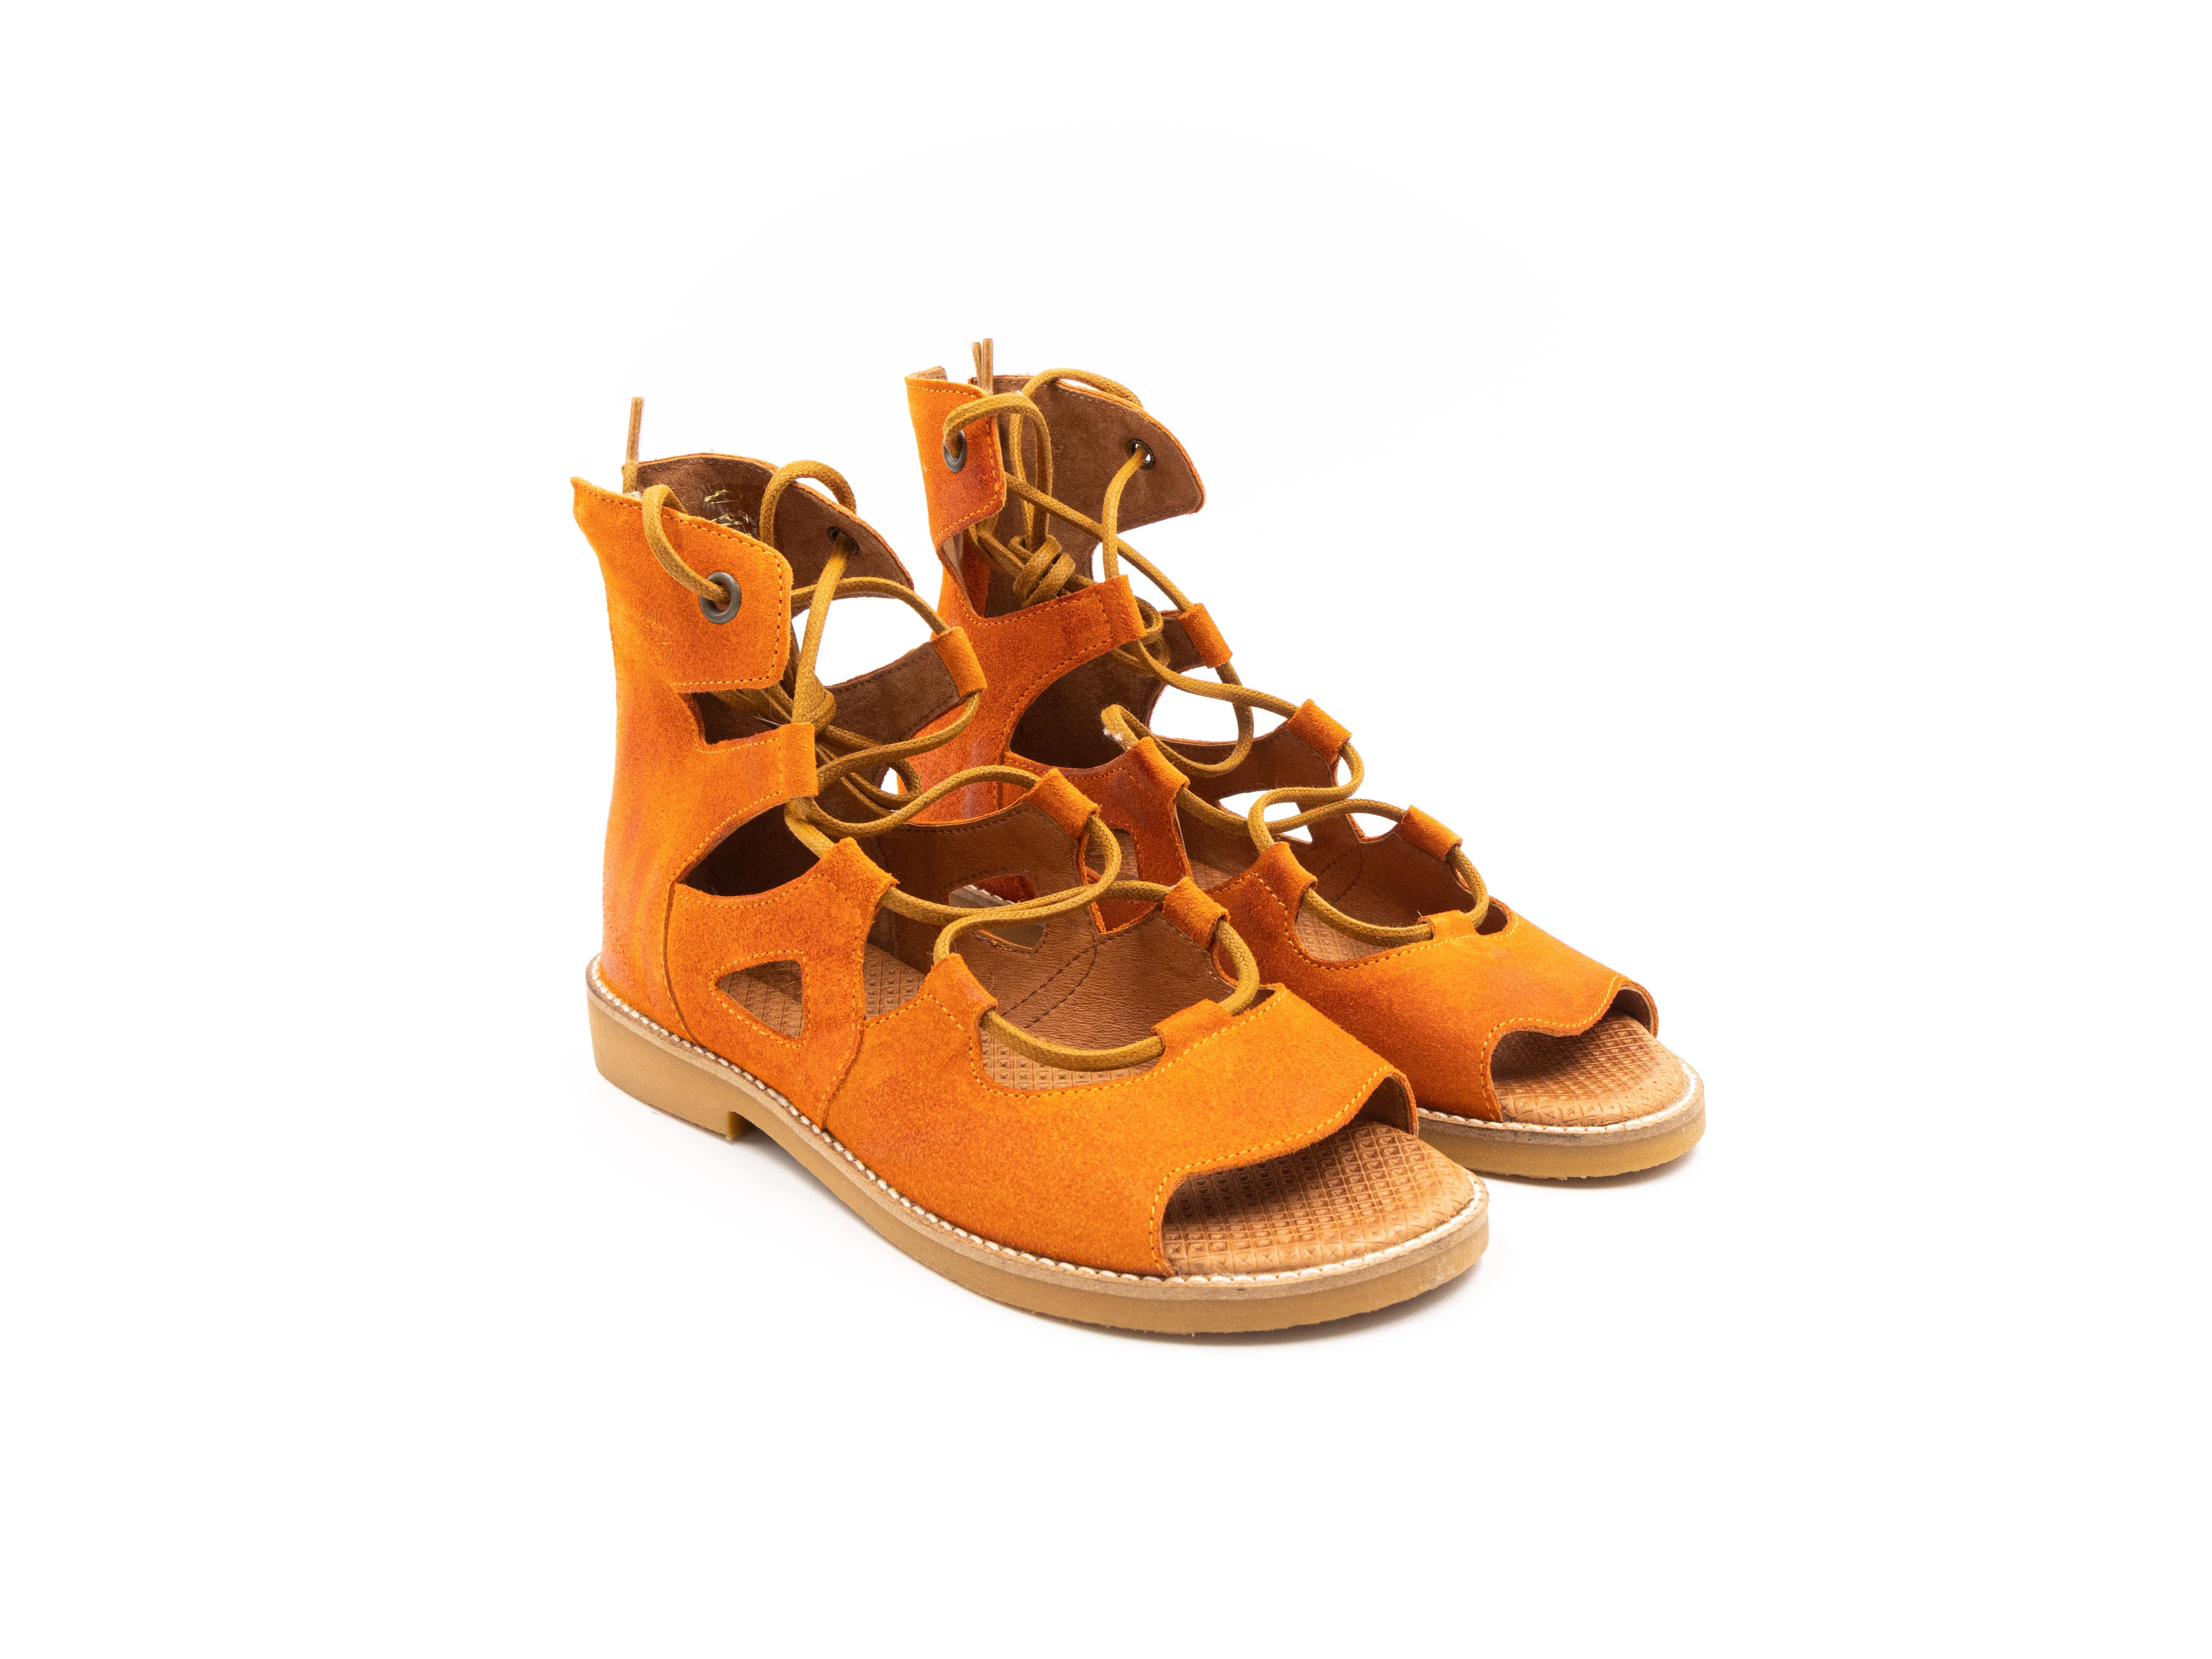 Roman-style sandals in orange tones.